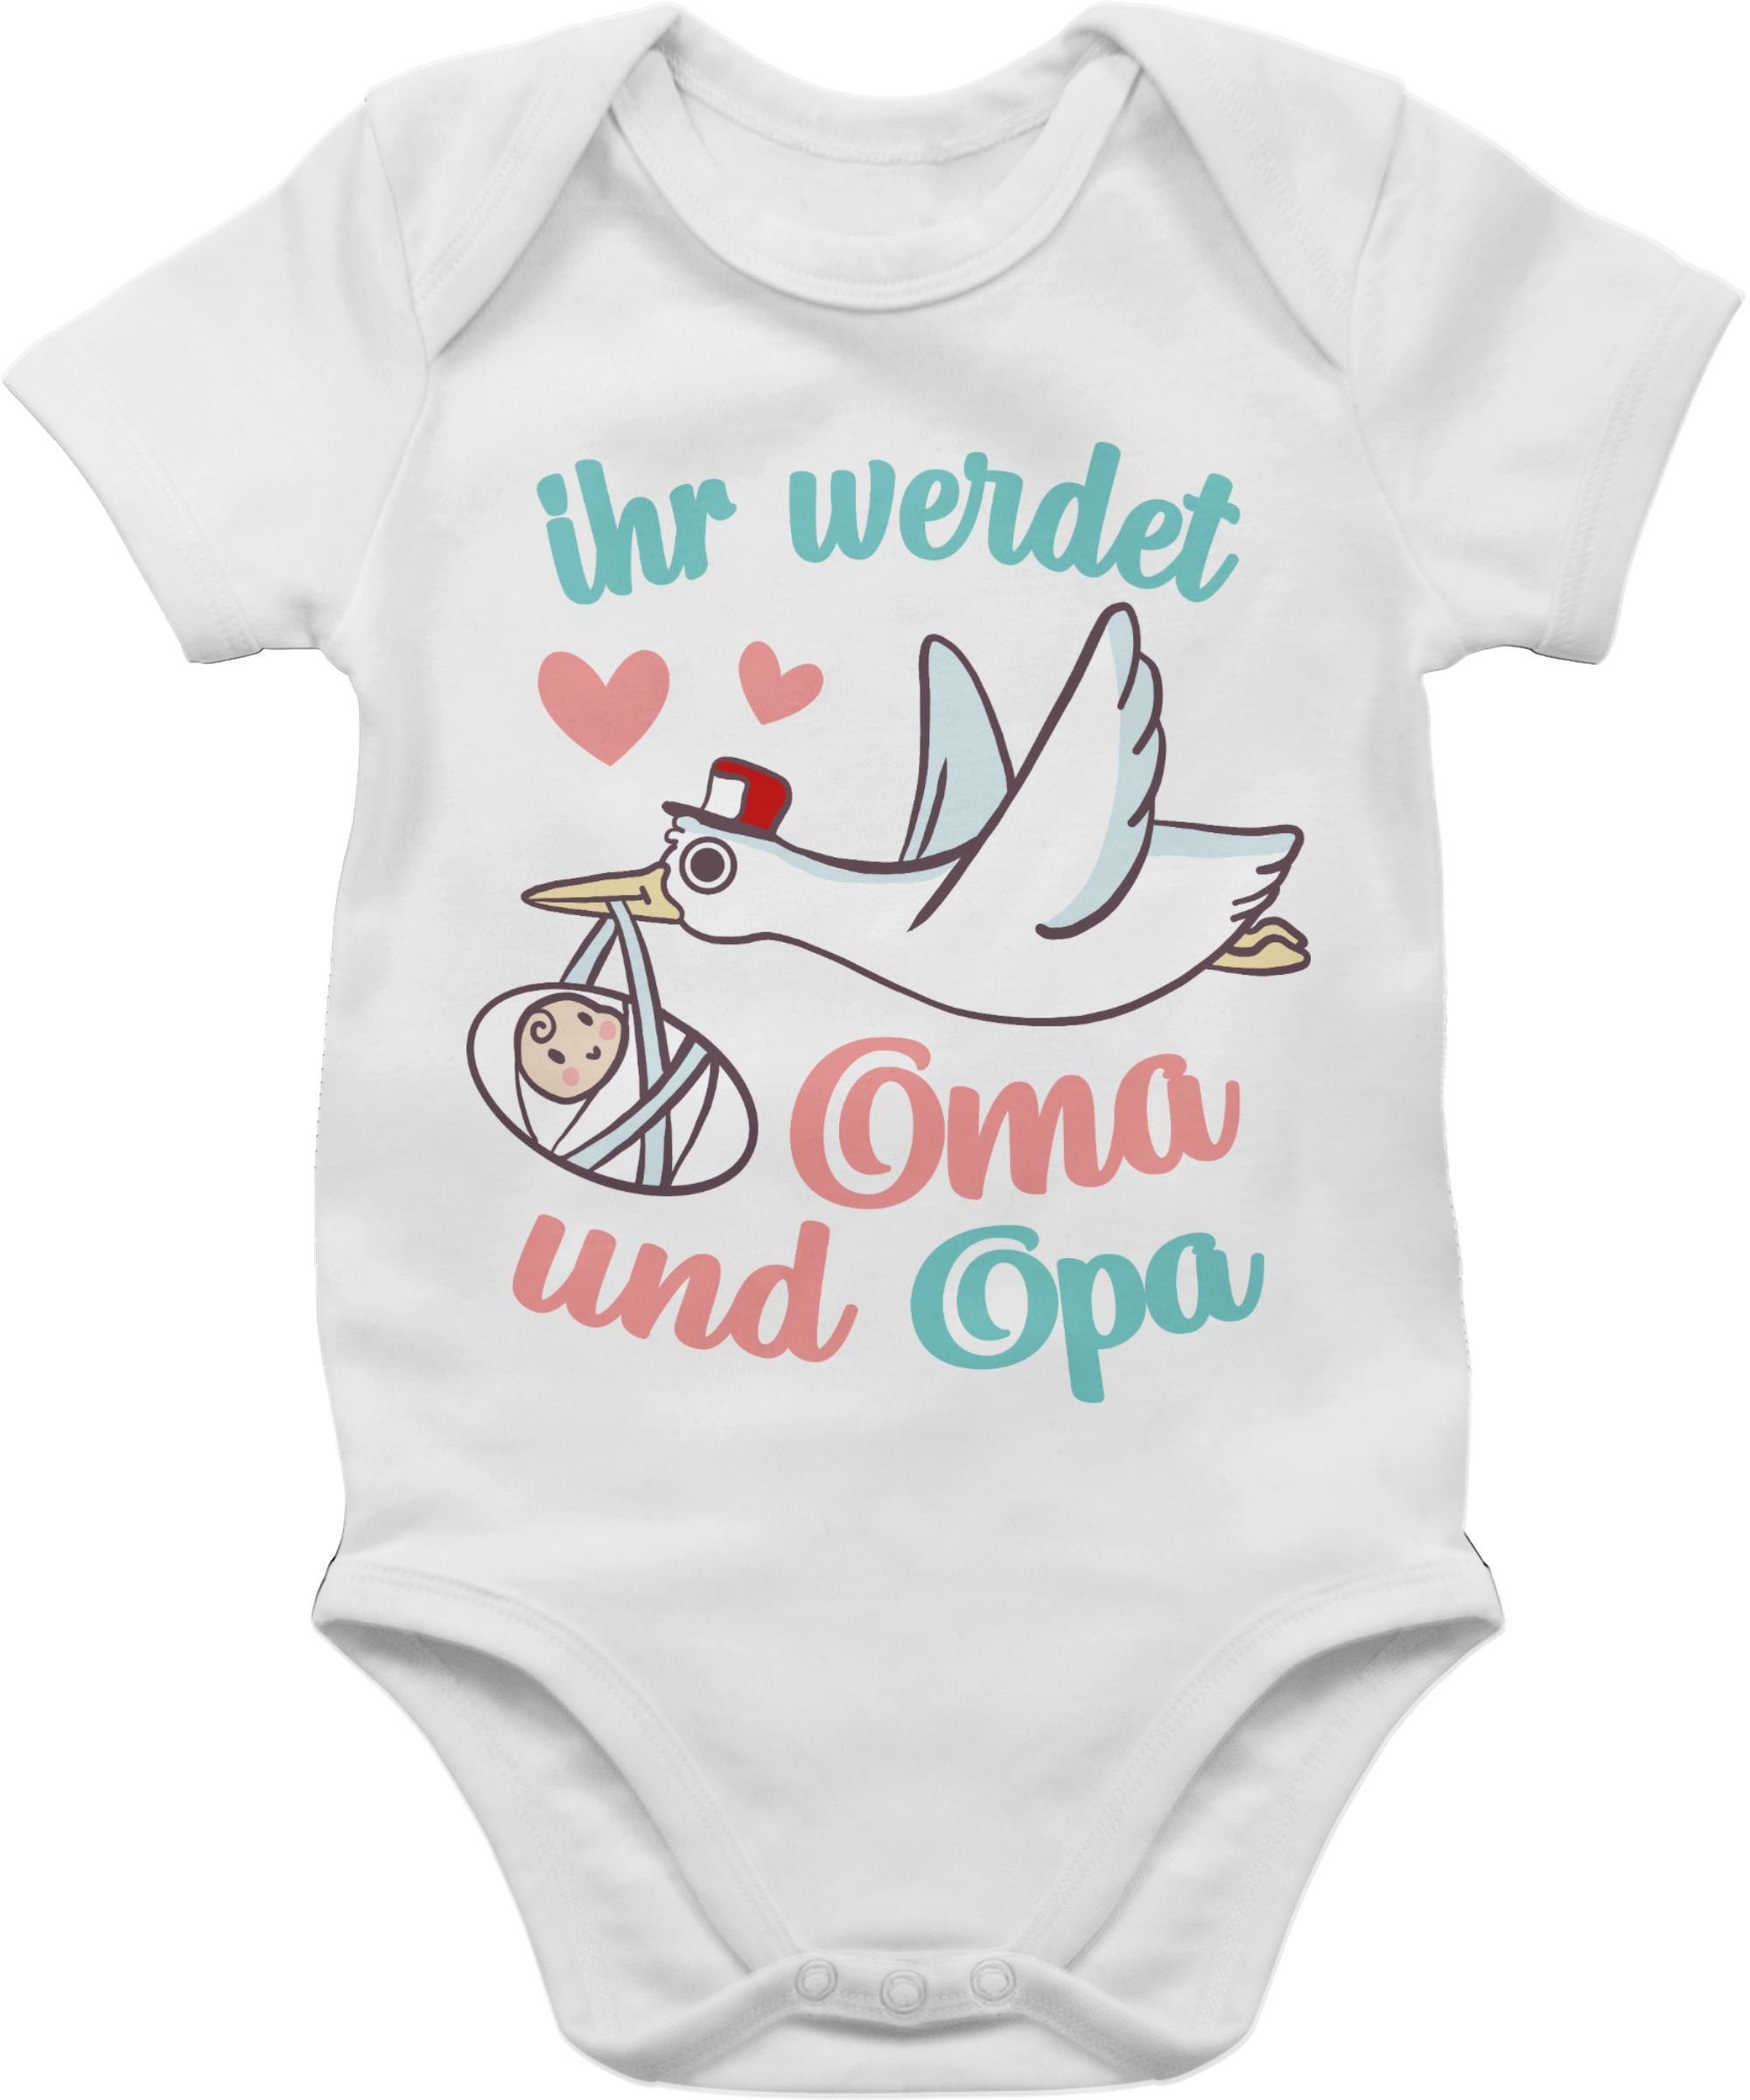 Shirtracer Shirtbody »Ihr werdet Oma und Opa - Storch - Geburt Geschenke  für Baby - Baby Body Kurzarm« baby body weiß kurzarm - idee schwangerschaft  verkünden - opa enkel